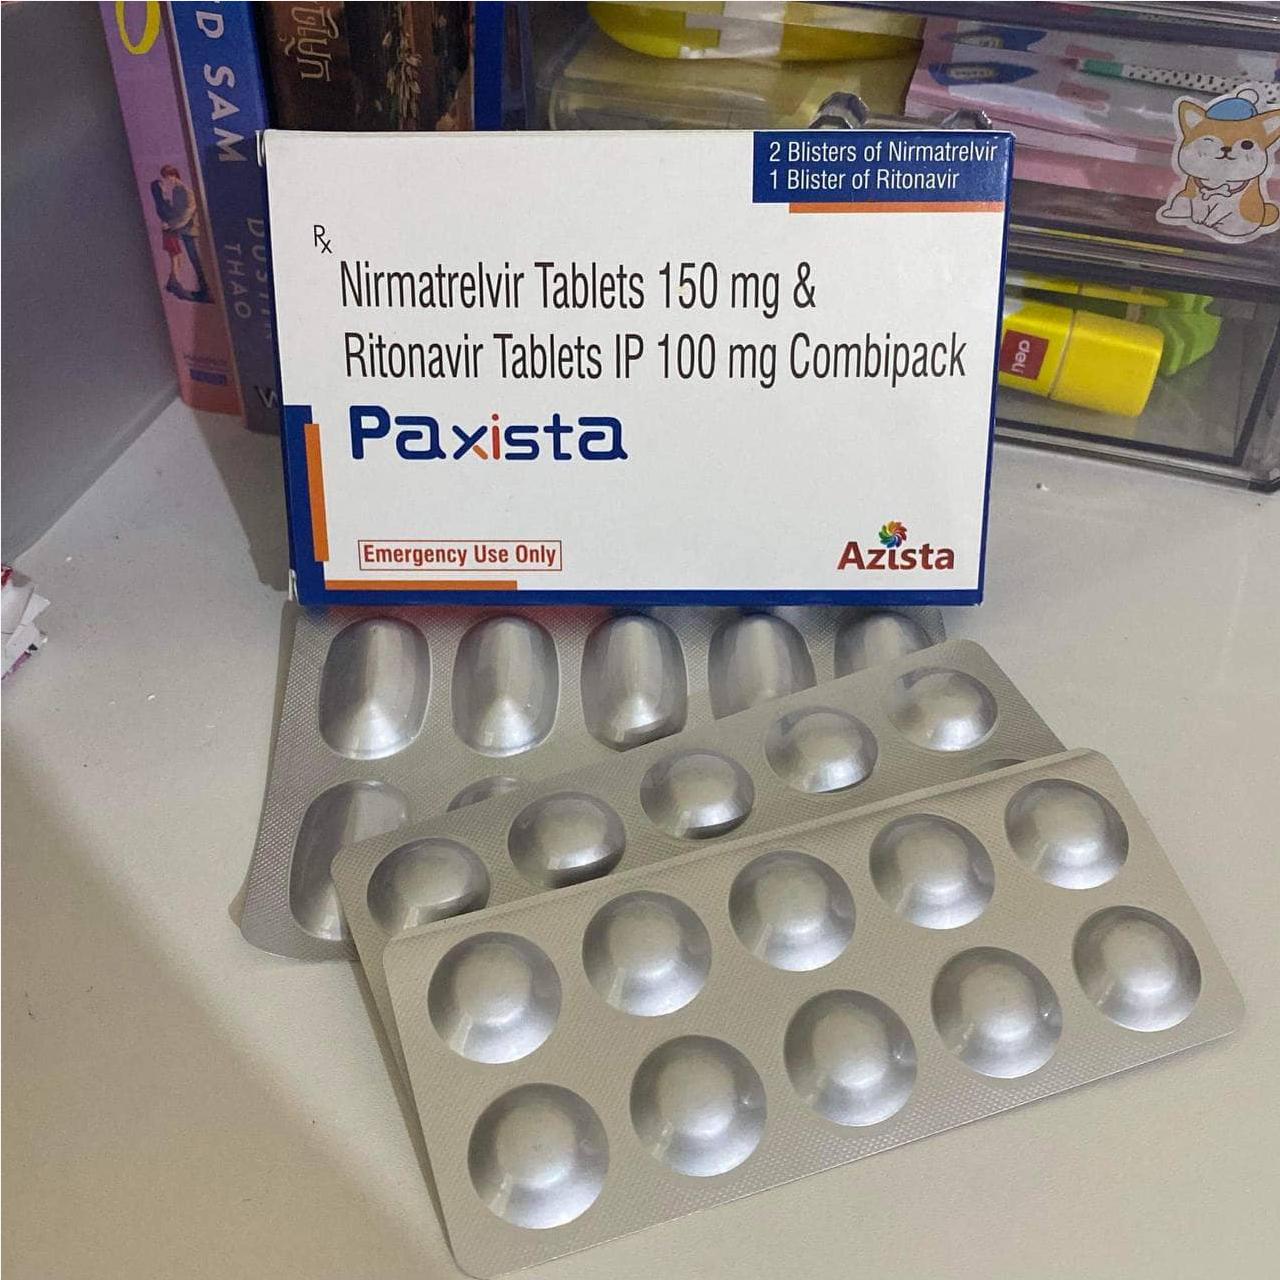 Thuốc Paxista Nirmatrelvir và Ritonavir giá bao nhiêu mua ở đâu?